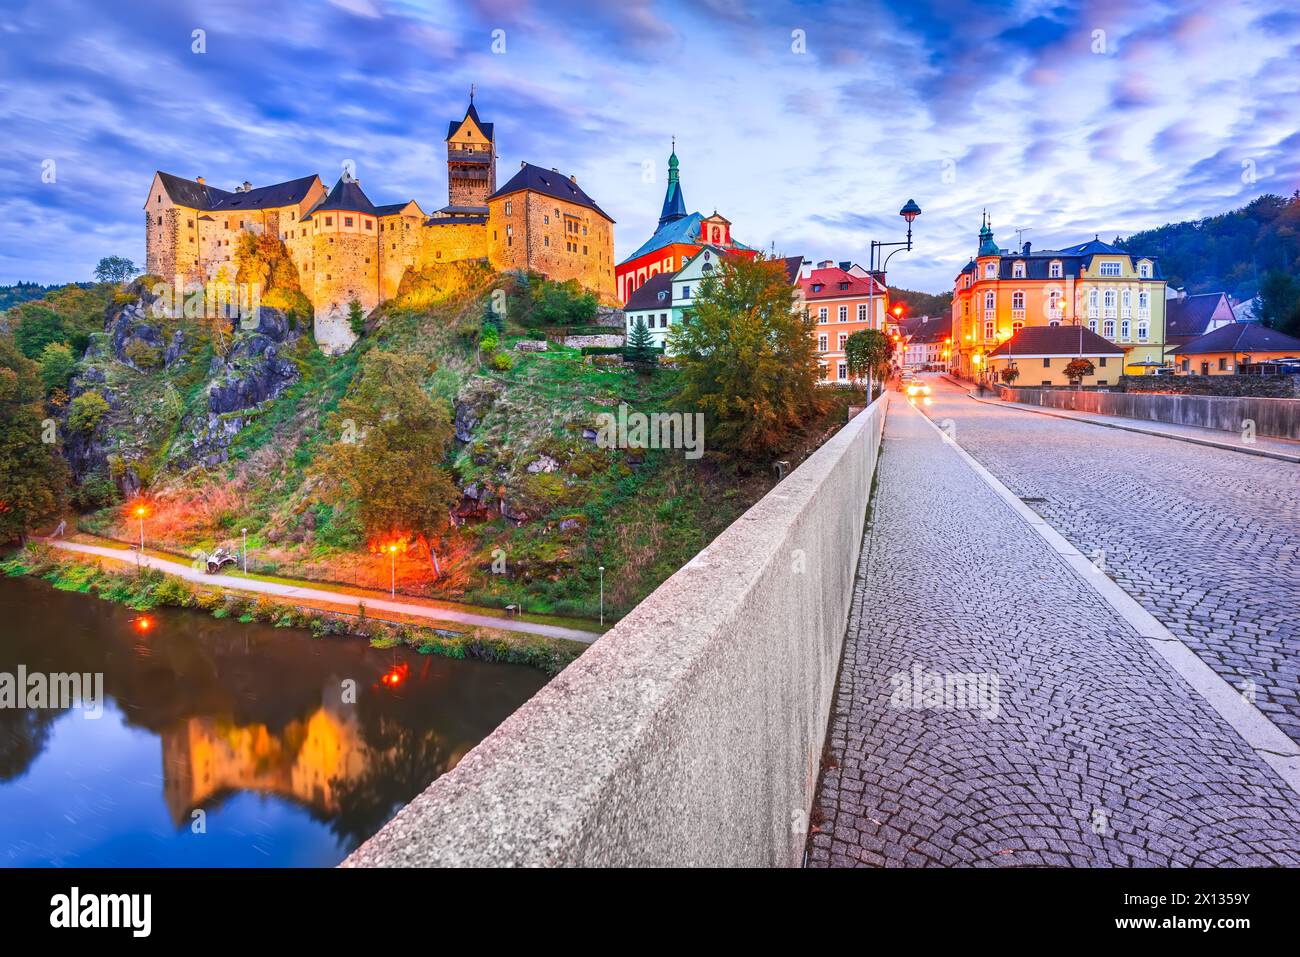 Loket, République tchèque. Charmante ville médiévale fortifiée en Bohême, illuminée à l'heure bleue. Banque D'Images